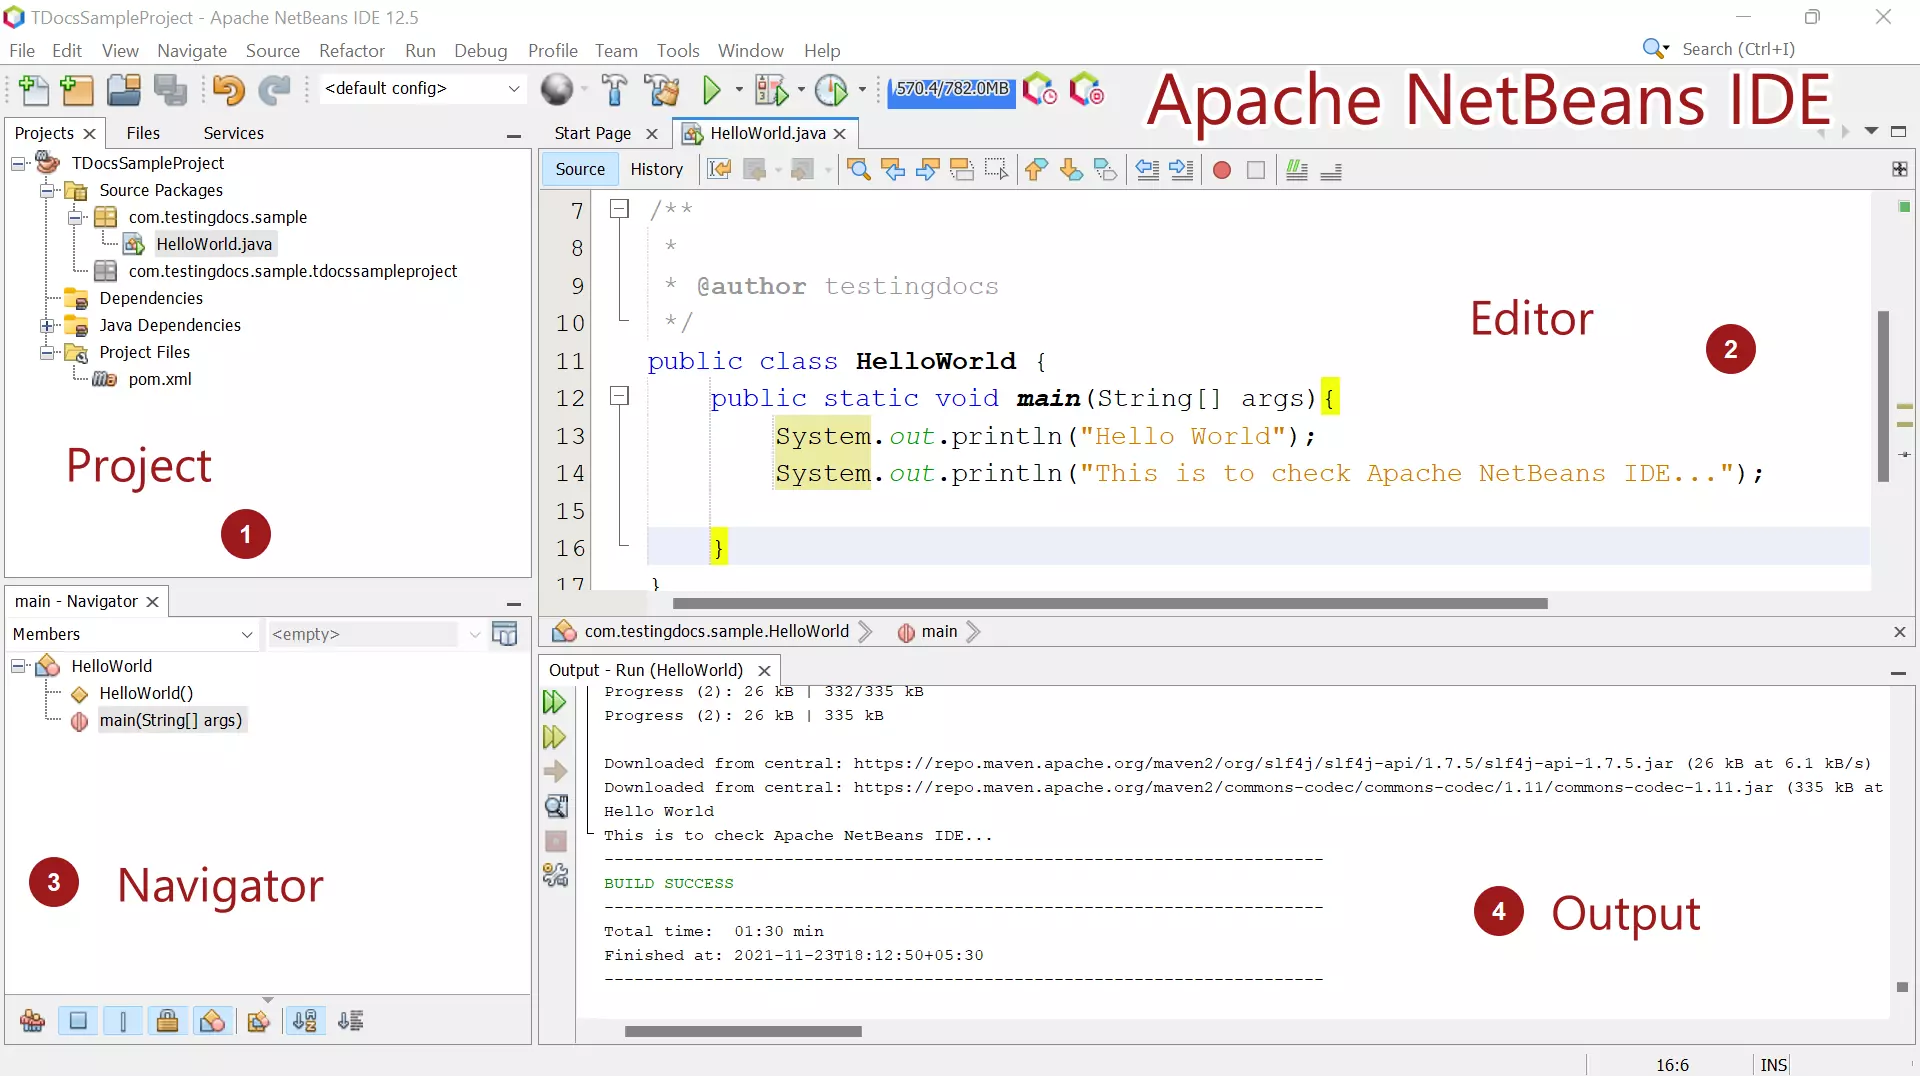 Apache NetBeans IDE Window